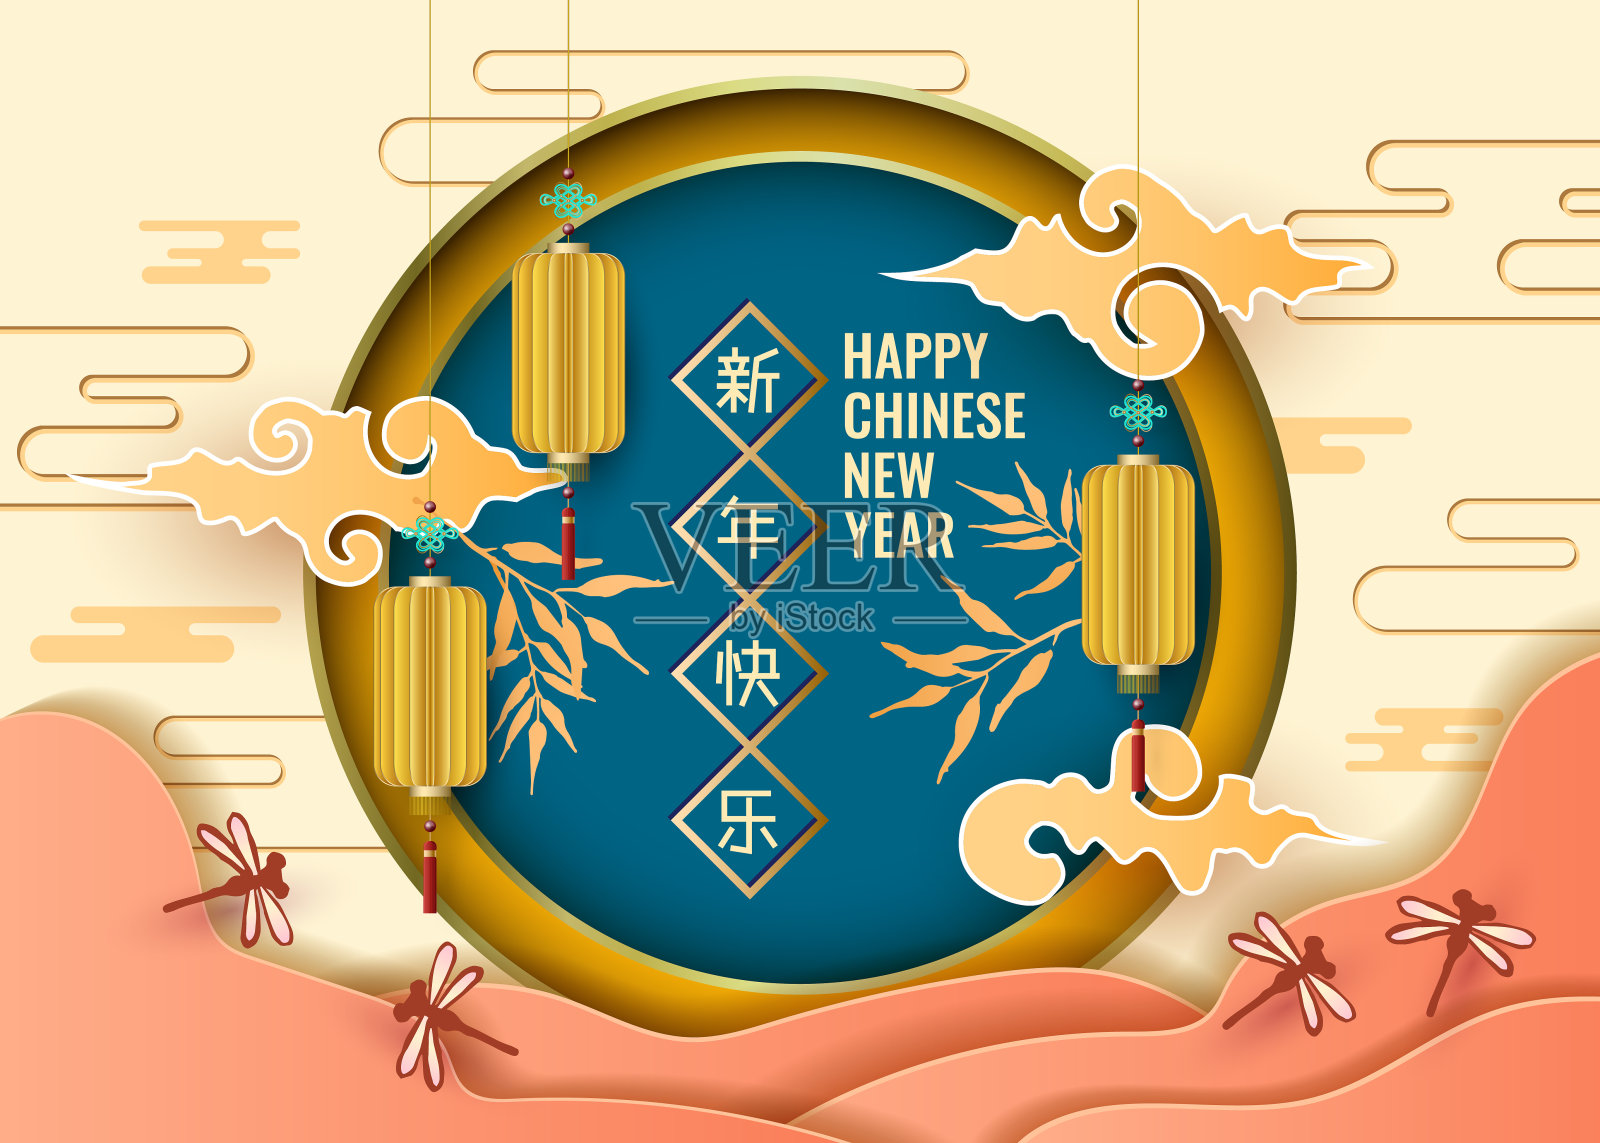 经典的中国新年背景插画图片素材